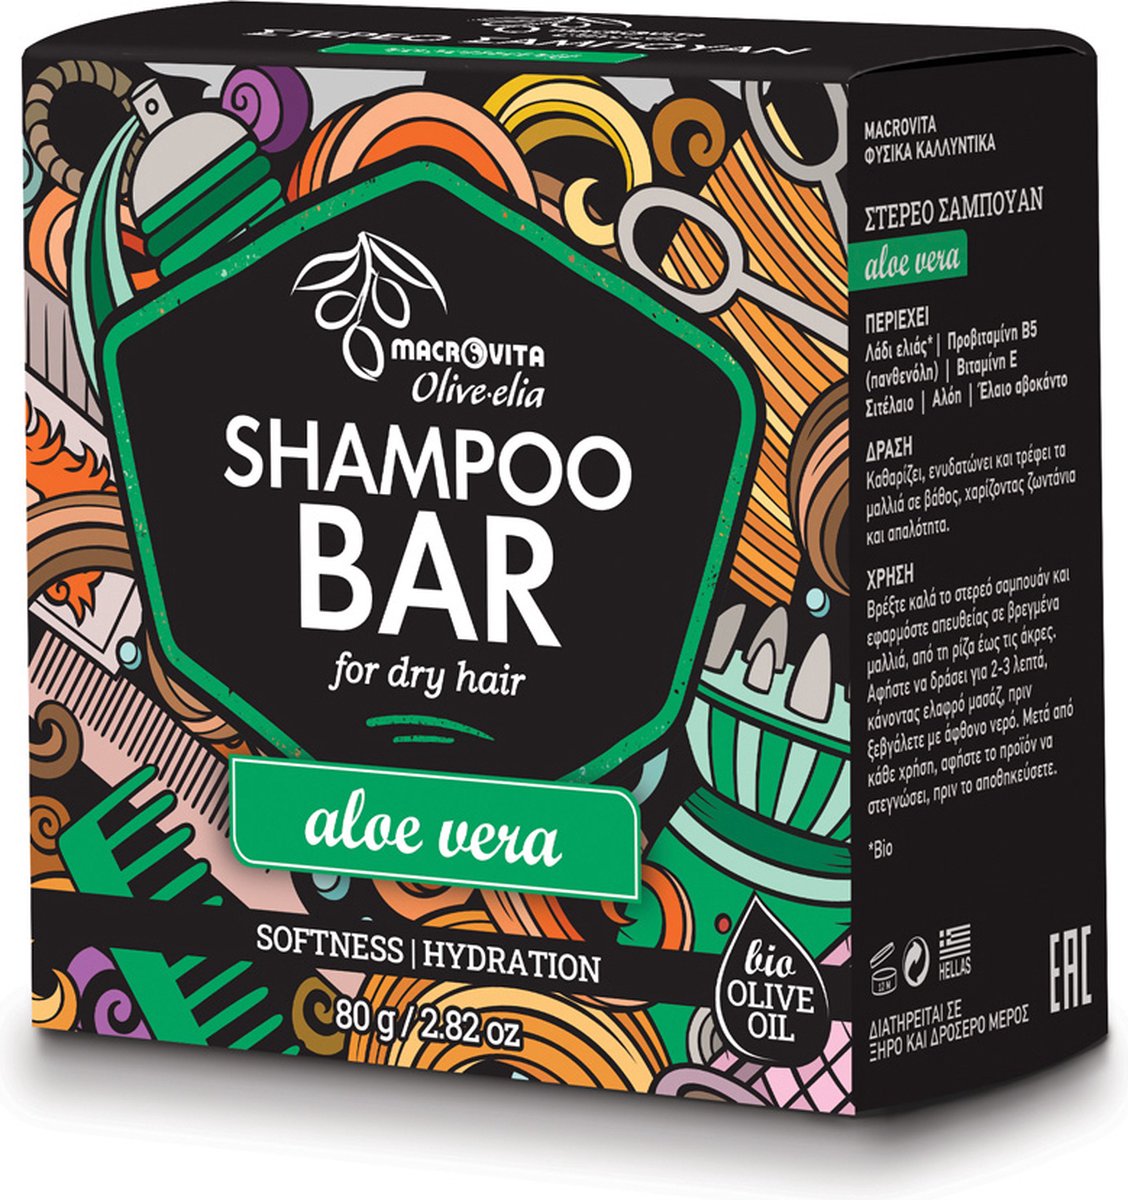 Olive-elia Shampoo Bar voor Droog Haar (Aloë Vera) - 80 gram